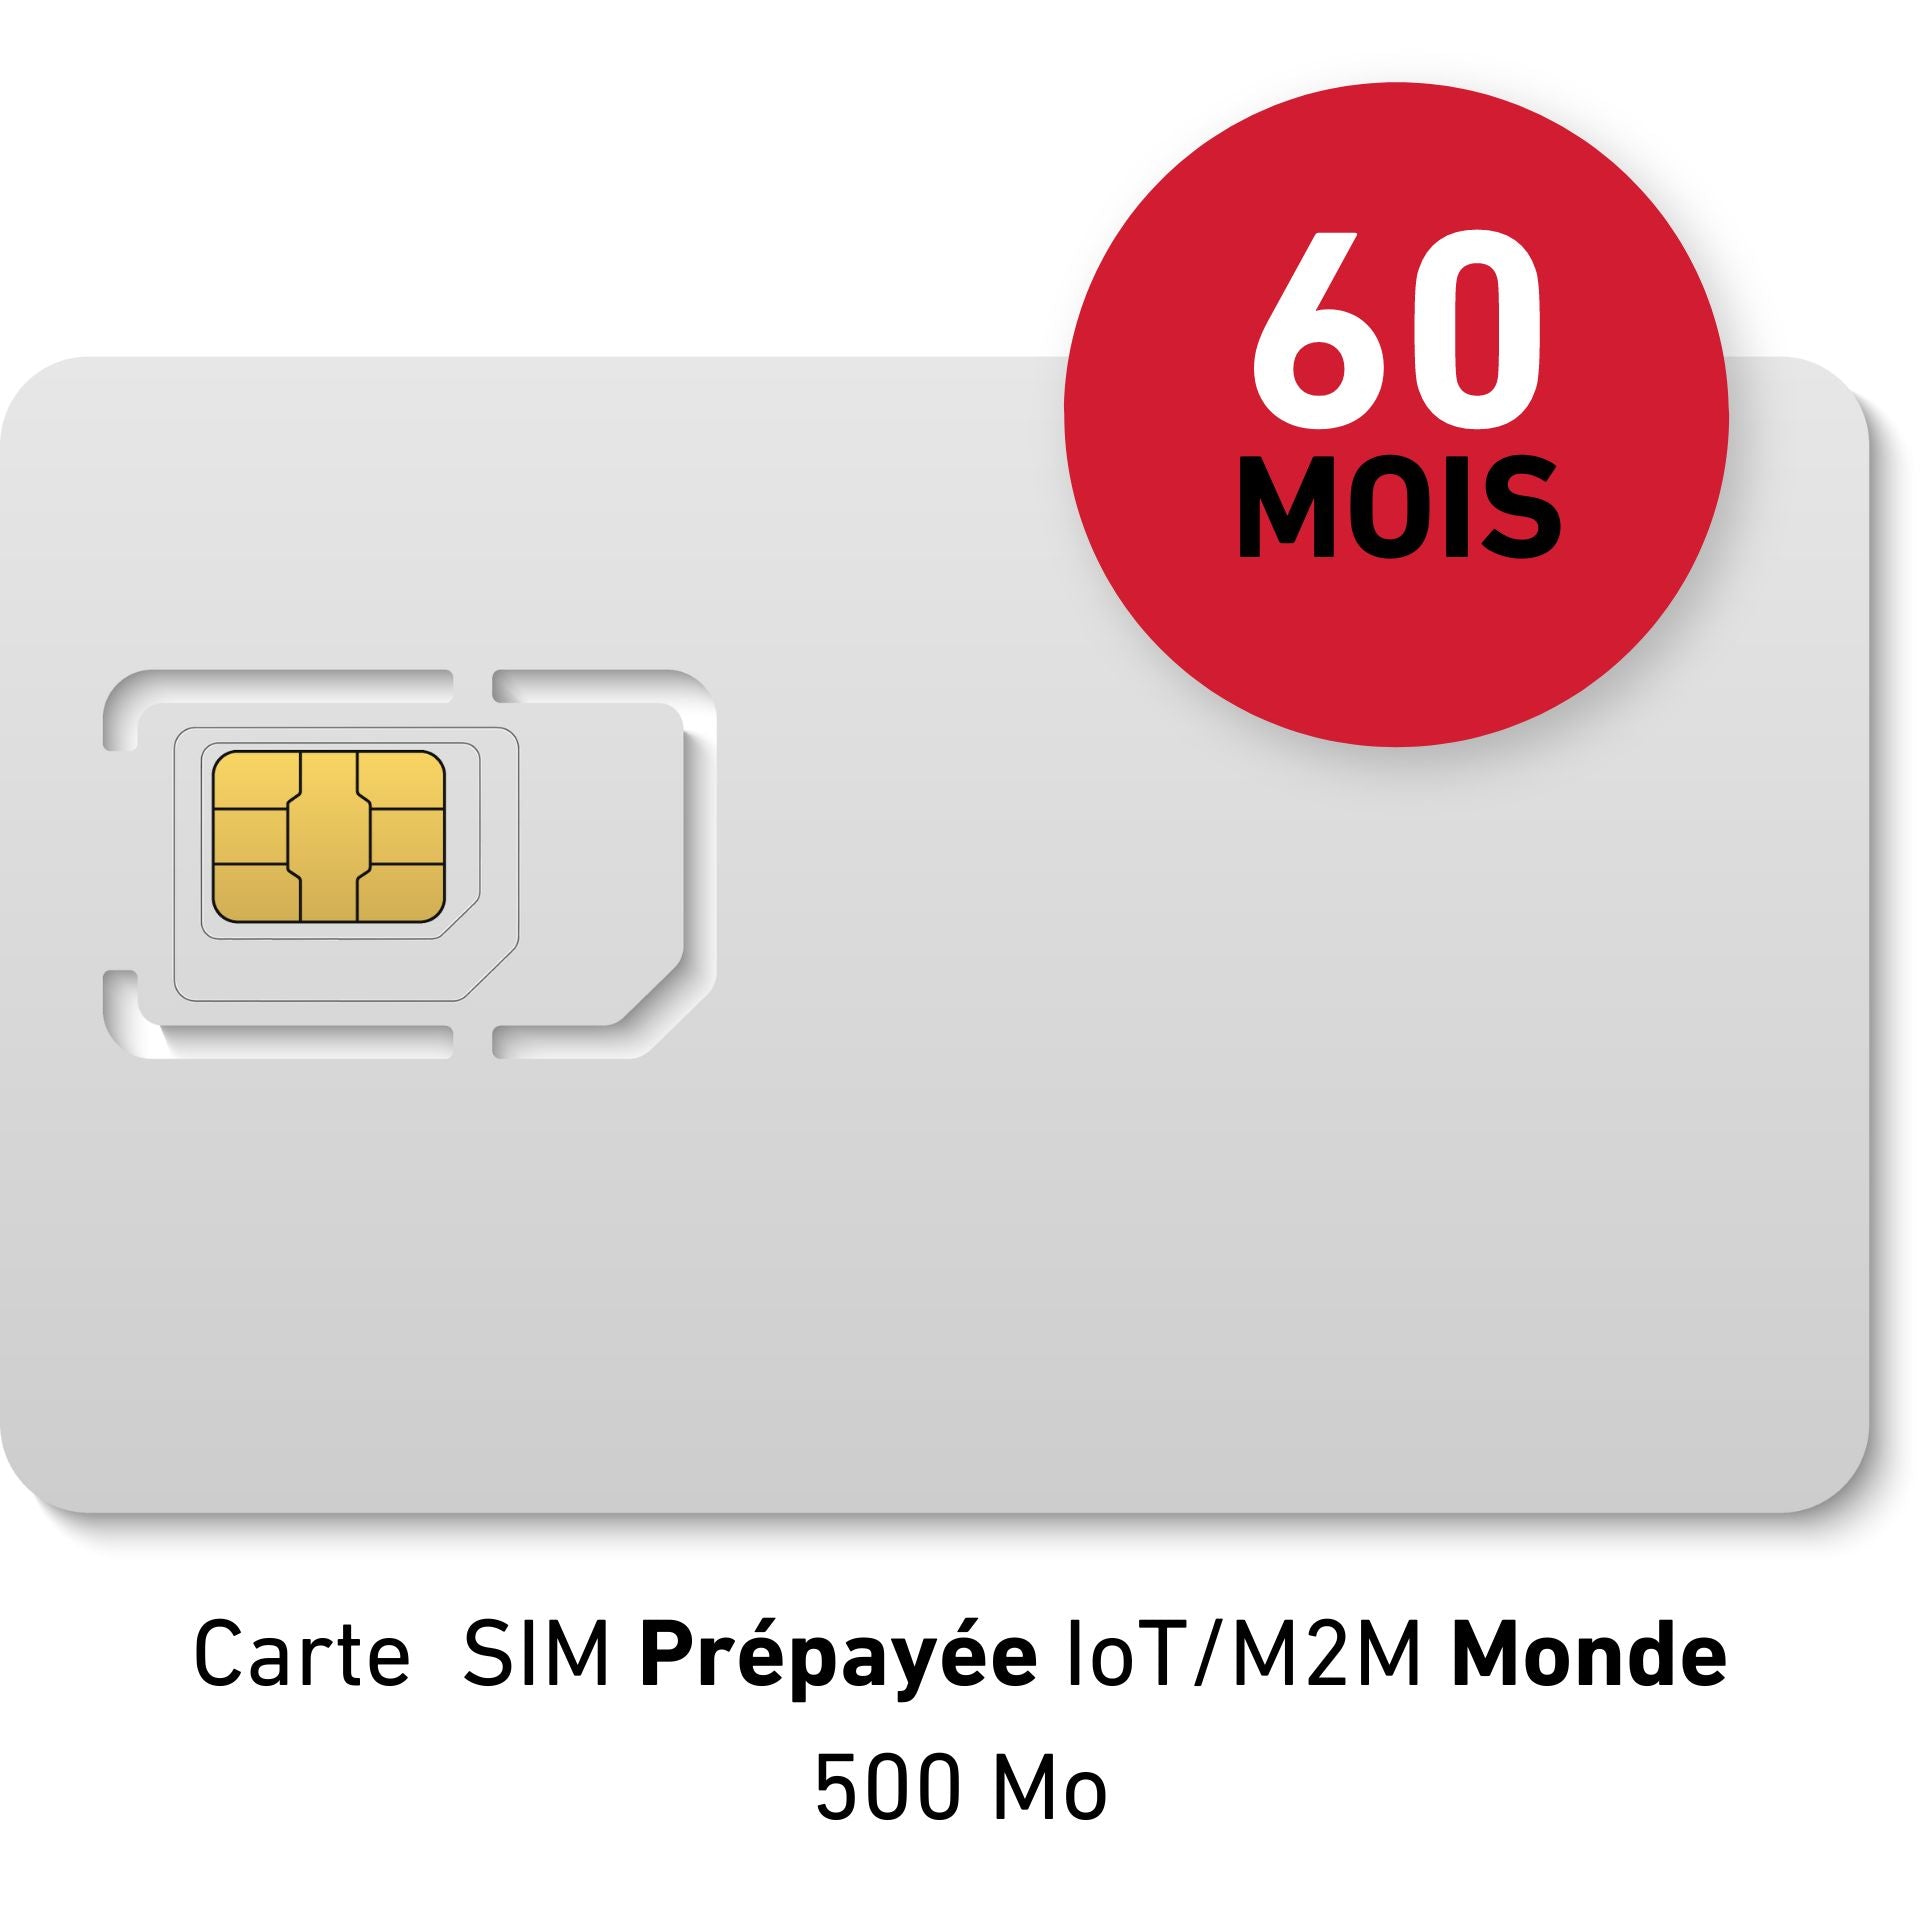 IoT/M2M World Prepaid SIM Card - 50 € HT - 500Mb dati - Validità 60 MESI